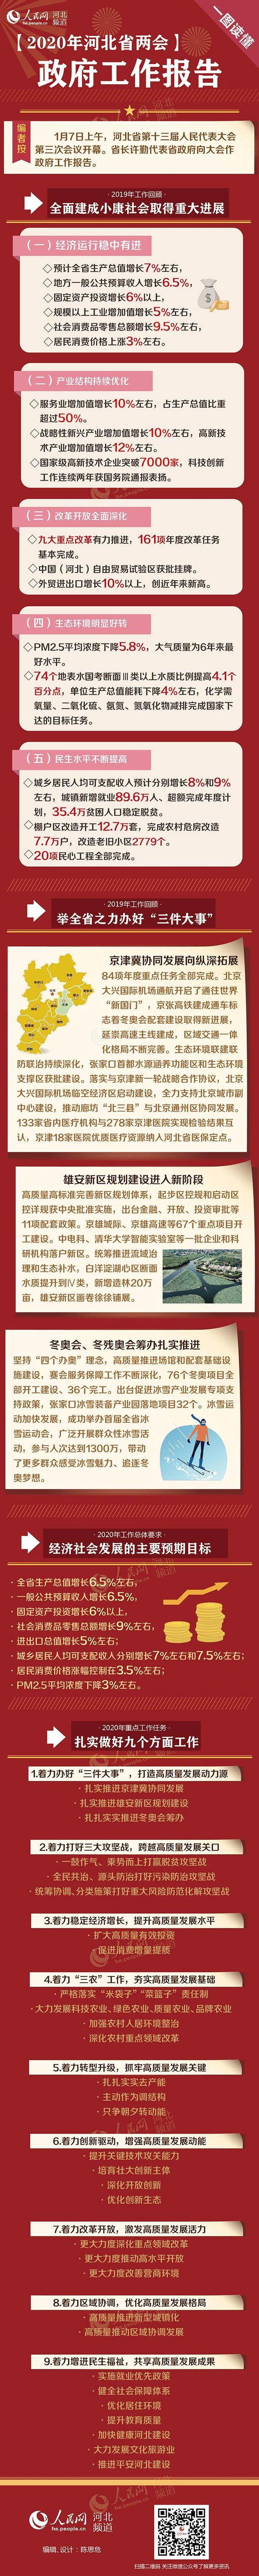 一图读懂2020年河北省政府工作报告